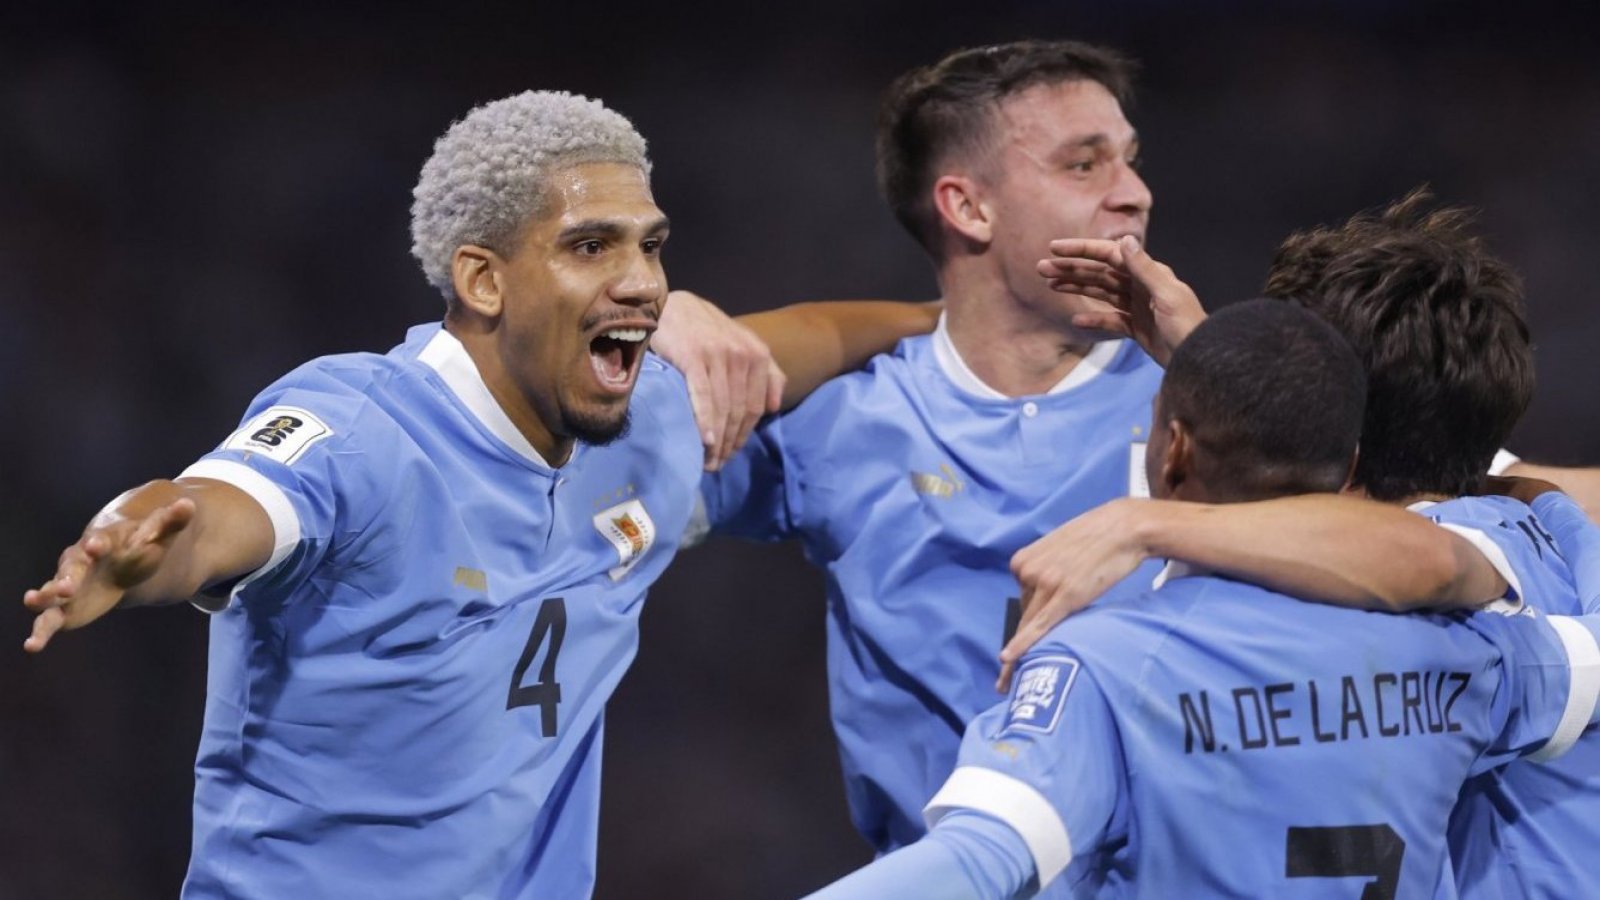 Jugador x Jugador: los puntajes de Argentina vs. Uruguay